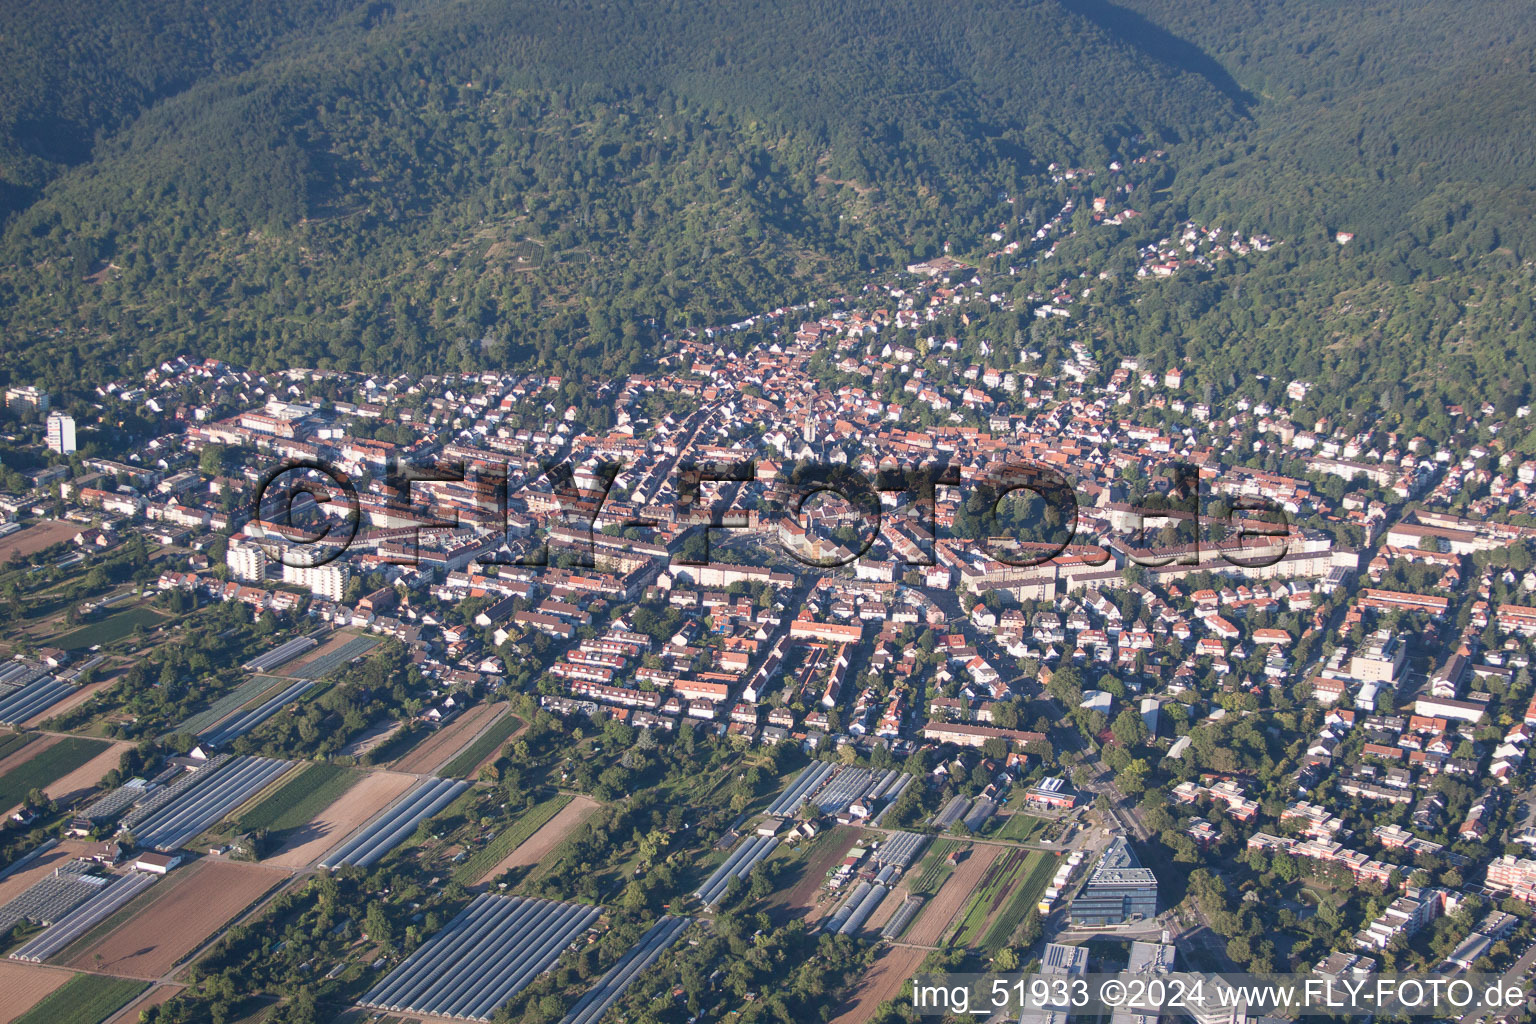 Luftbild von Ortsteil Handschuhsheim in Heidelberg im Bundesland Baden-Württemberg, Deutschland